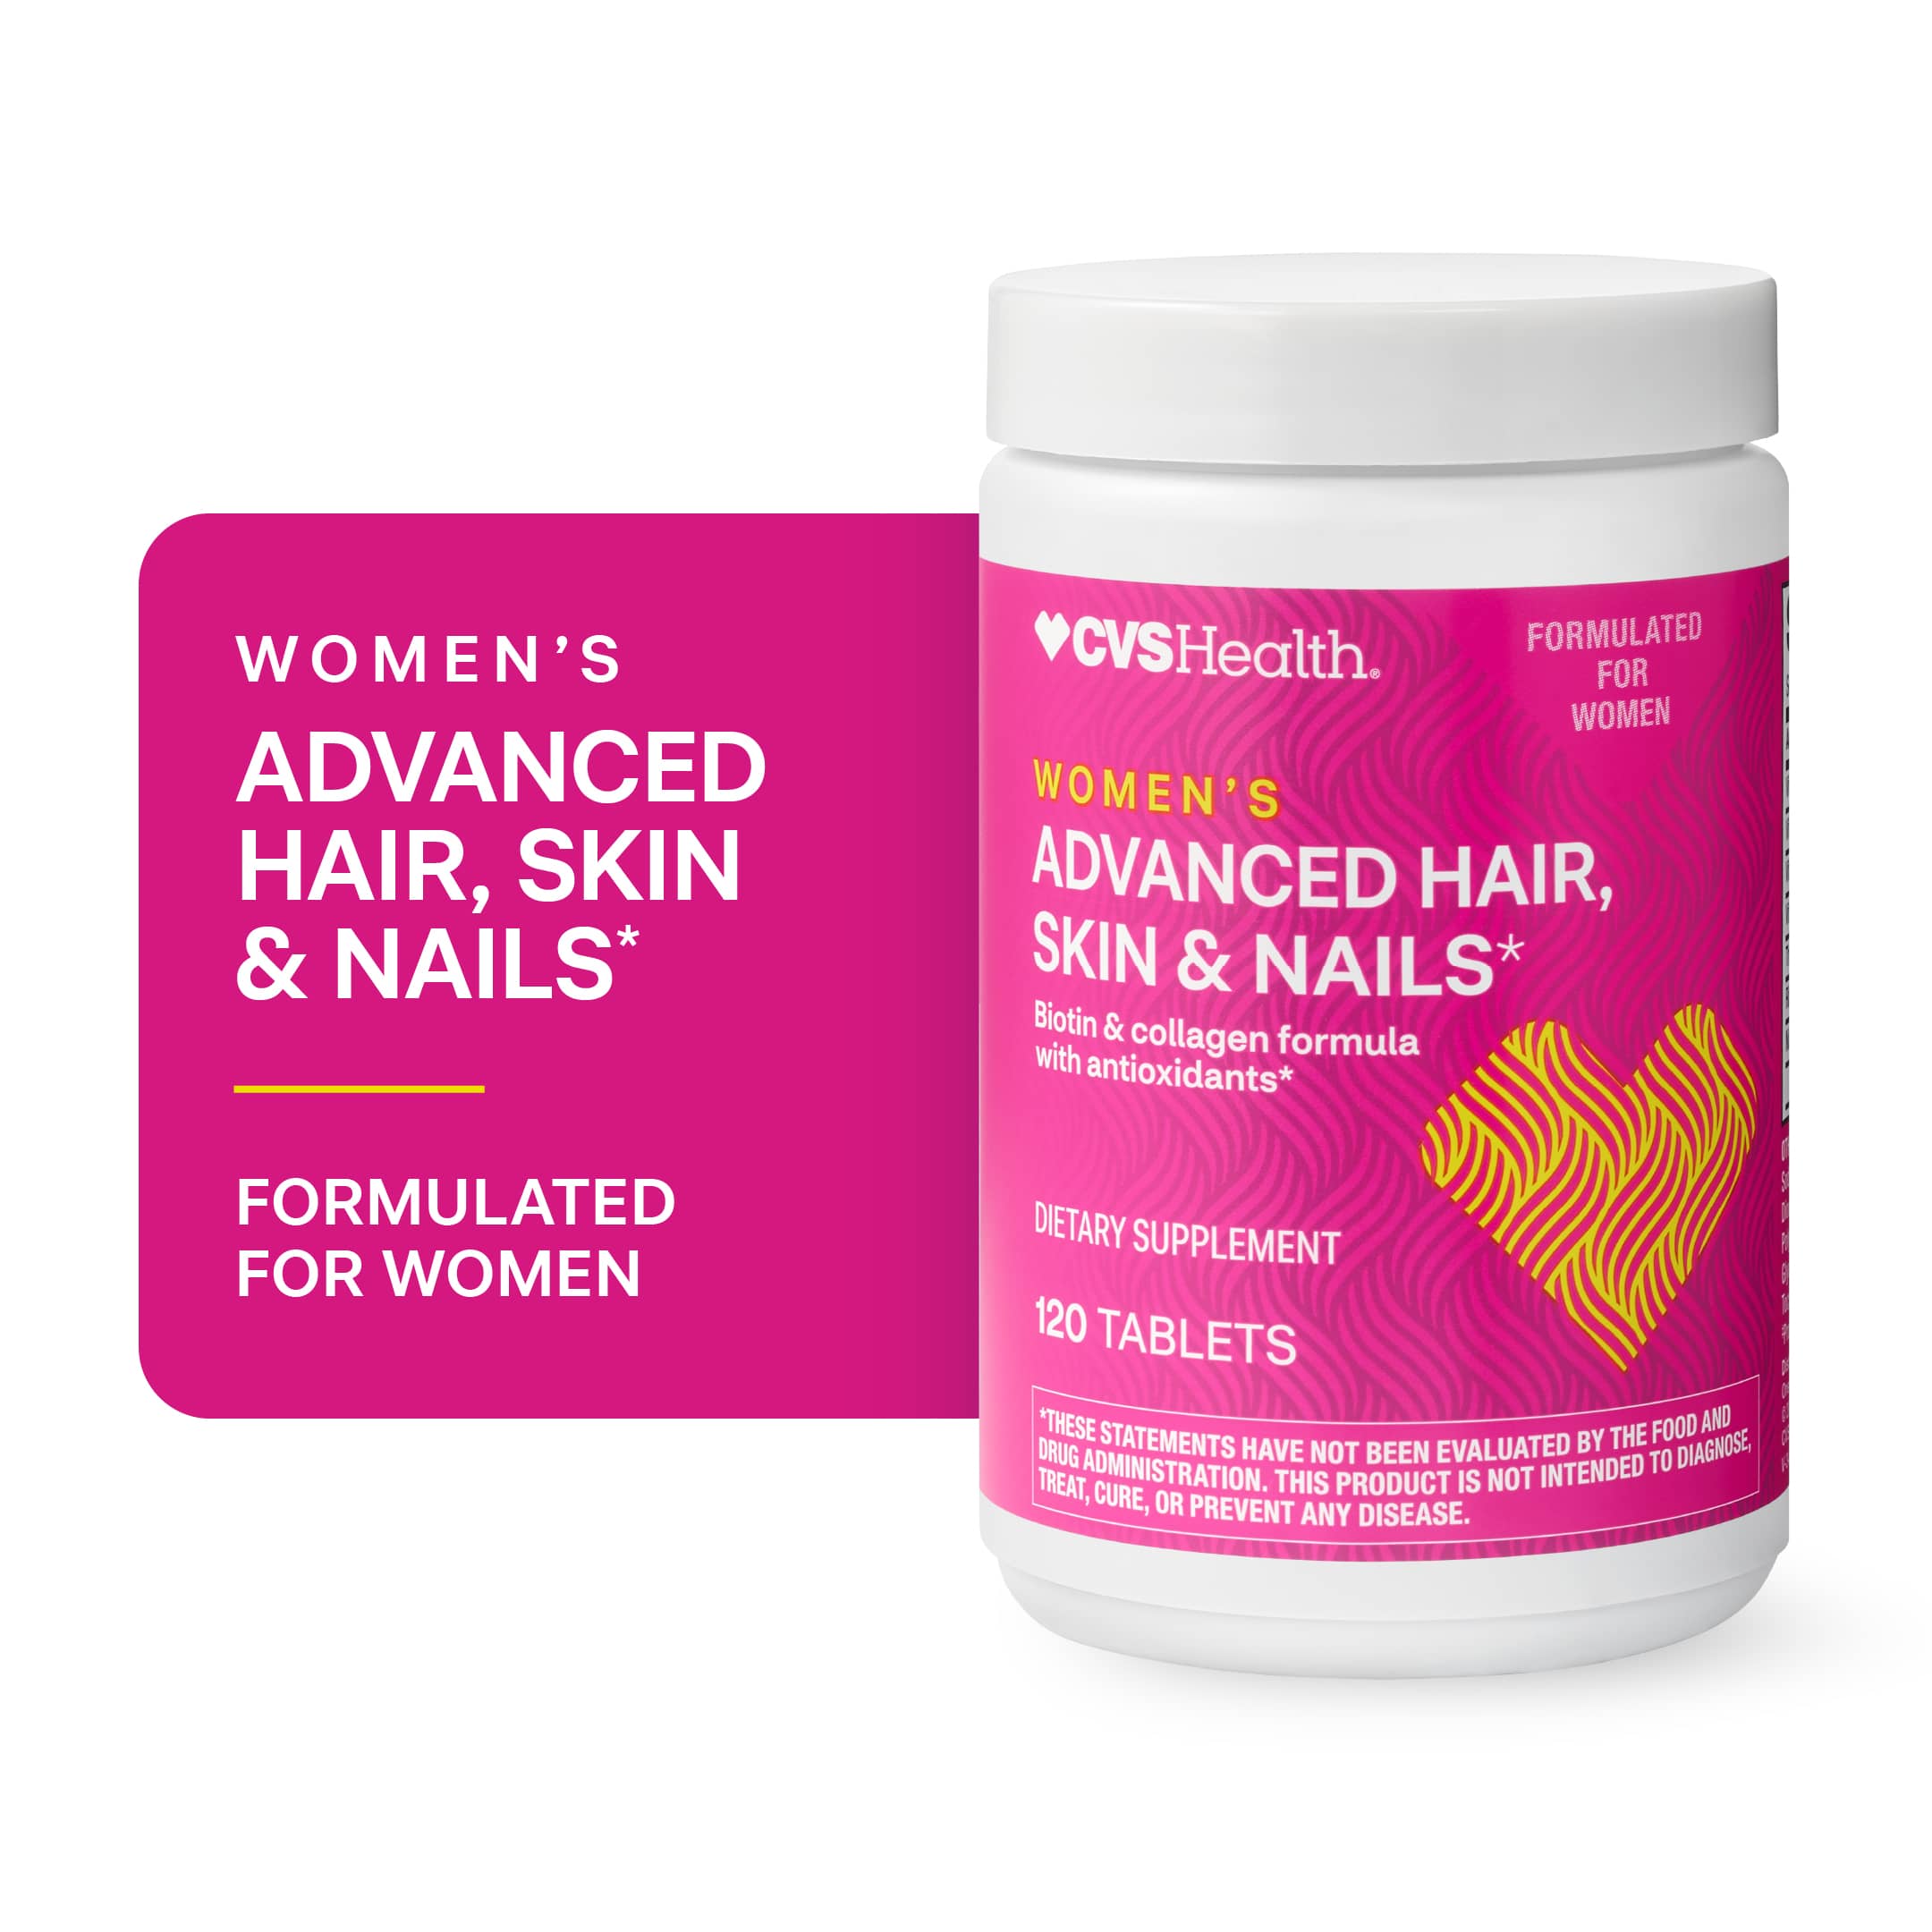 CVS Health Women's Advanced Hair, Skin & Nails*, 120CT